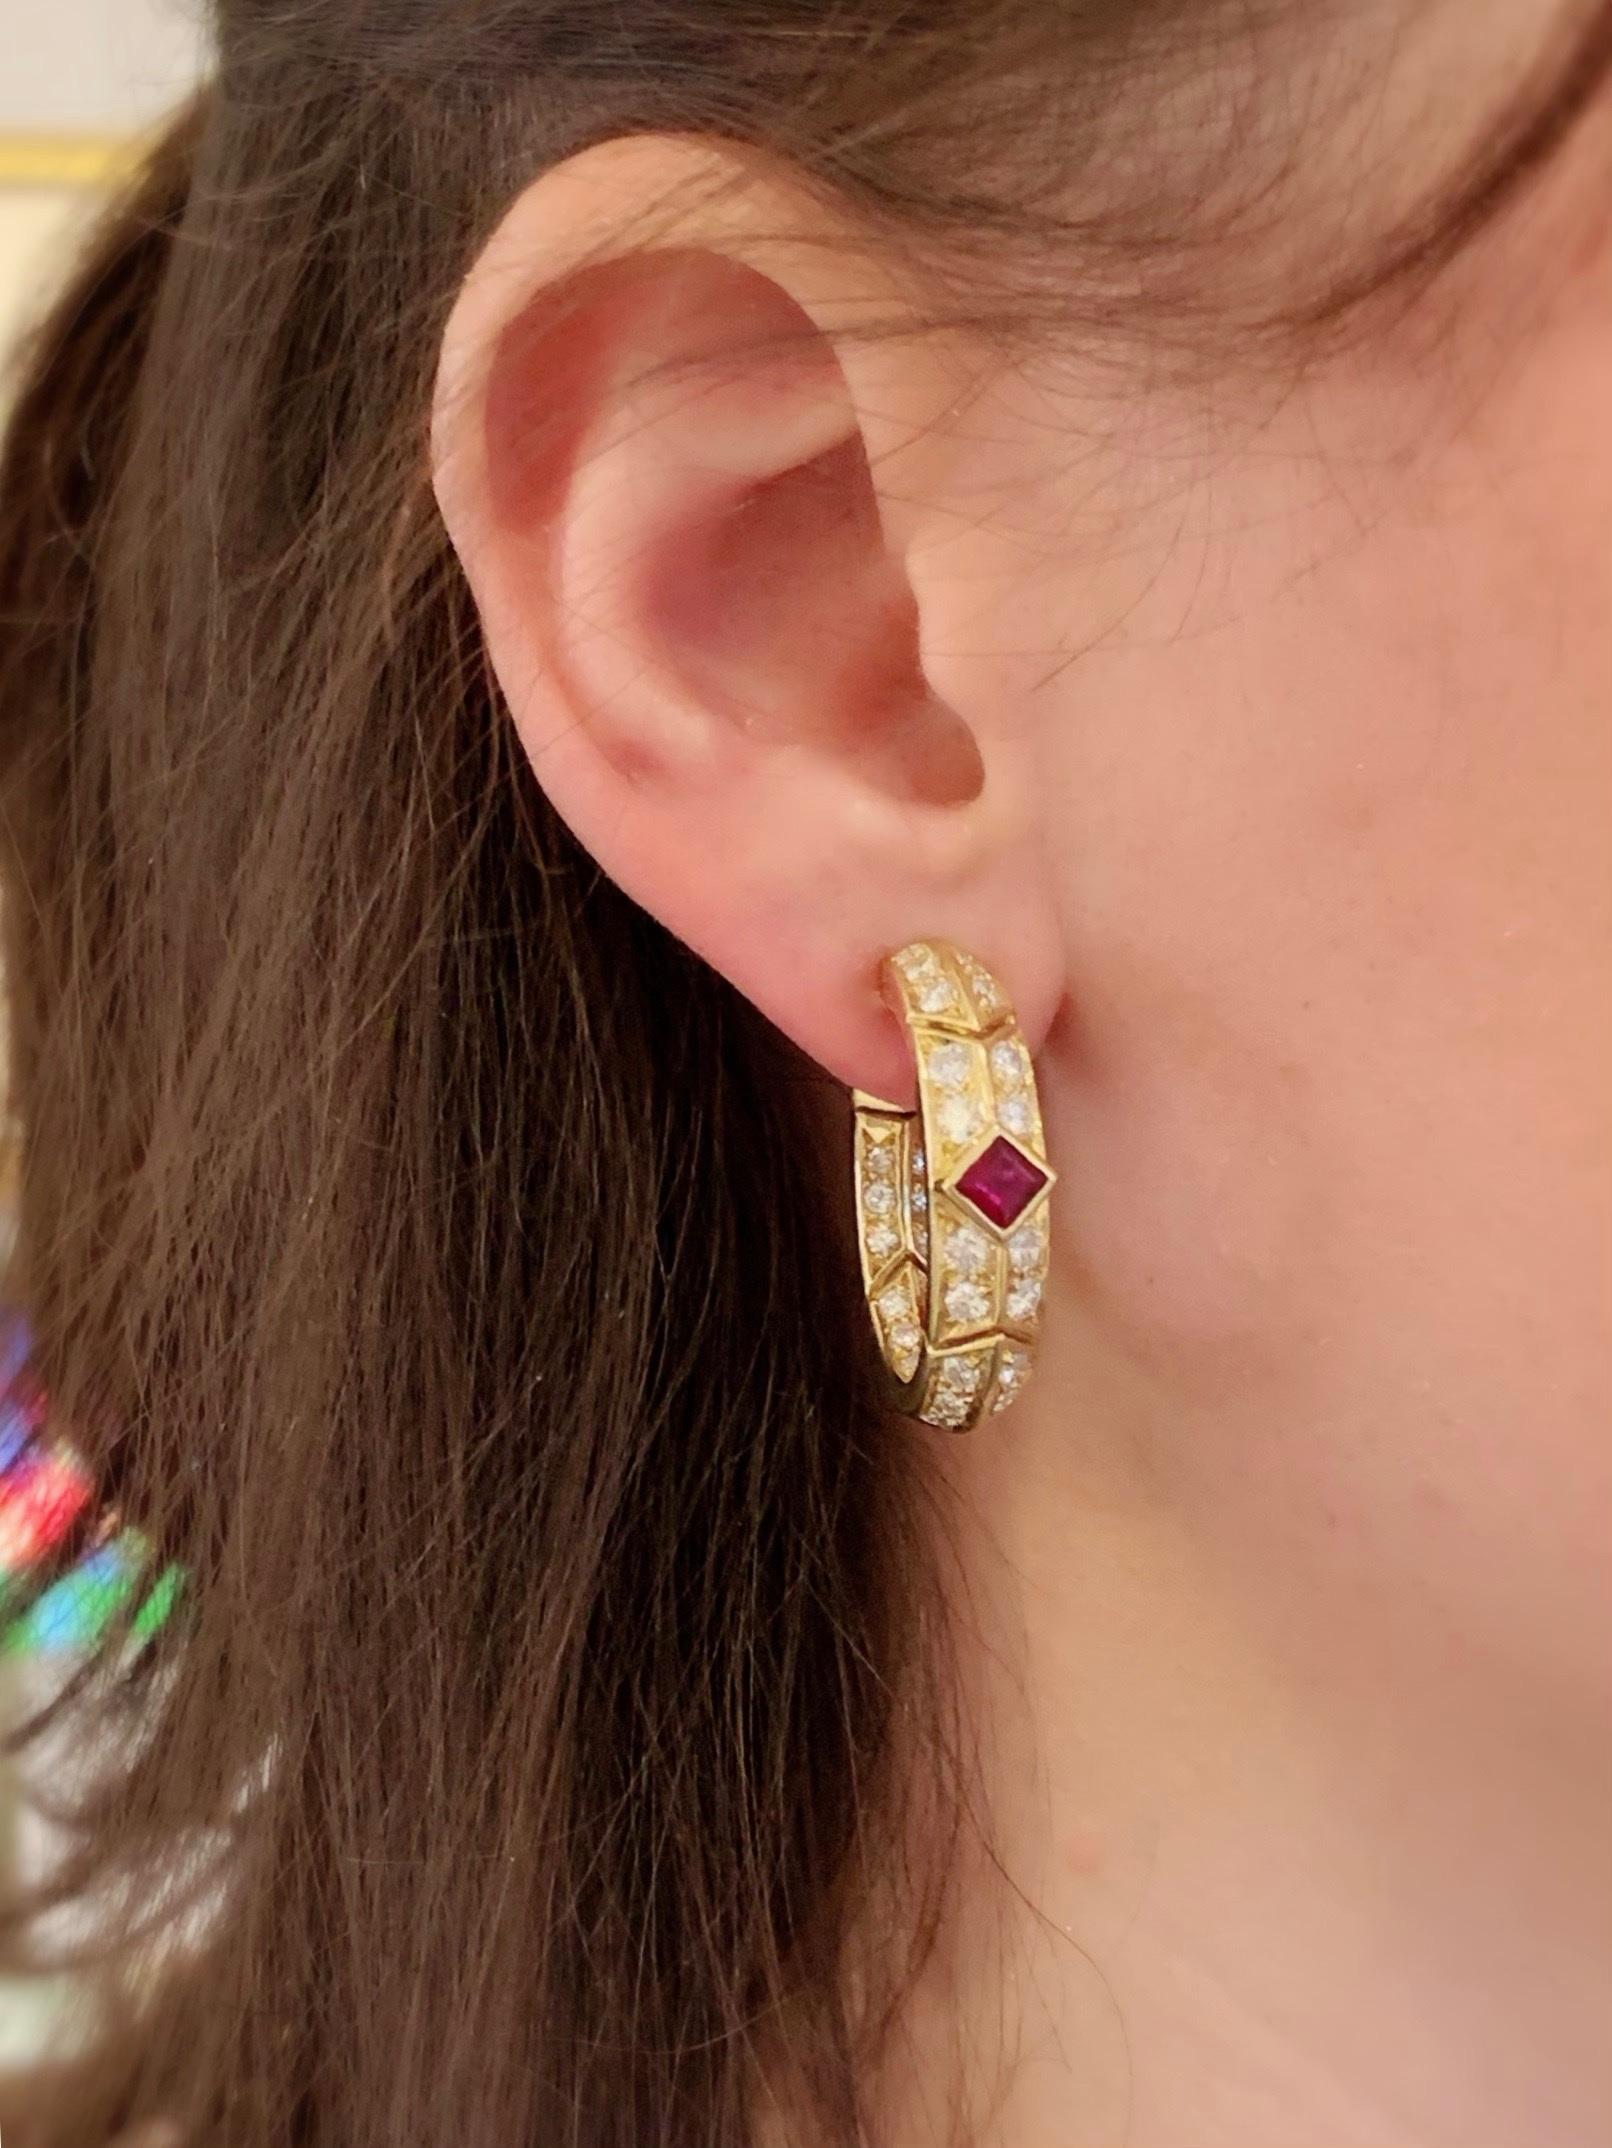 Women's Gold, Ruby and Diamond Earrings by Van Cleef & Arpels